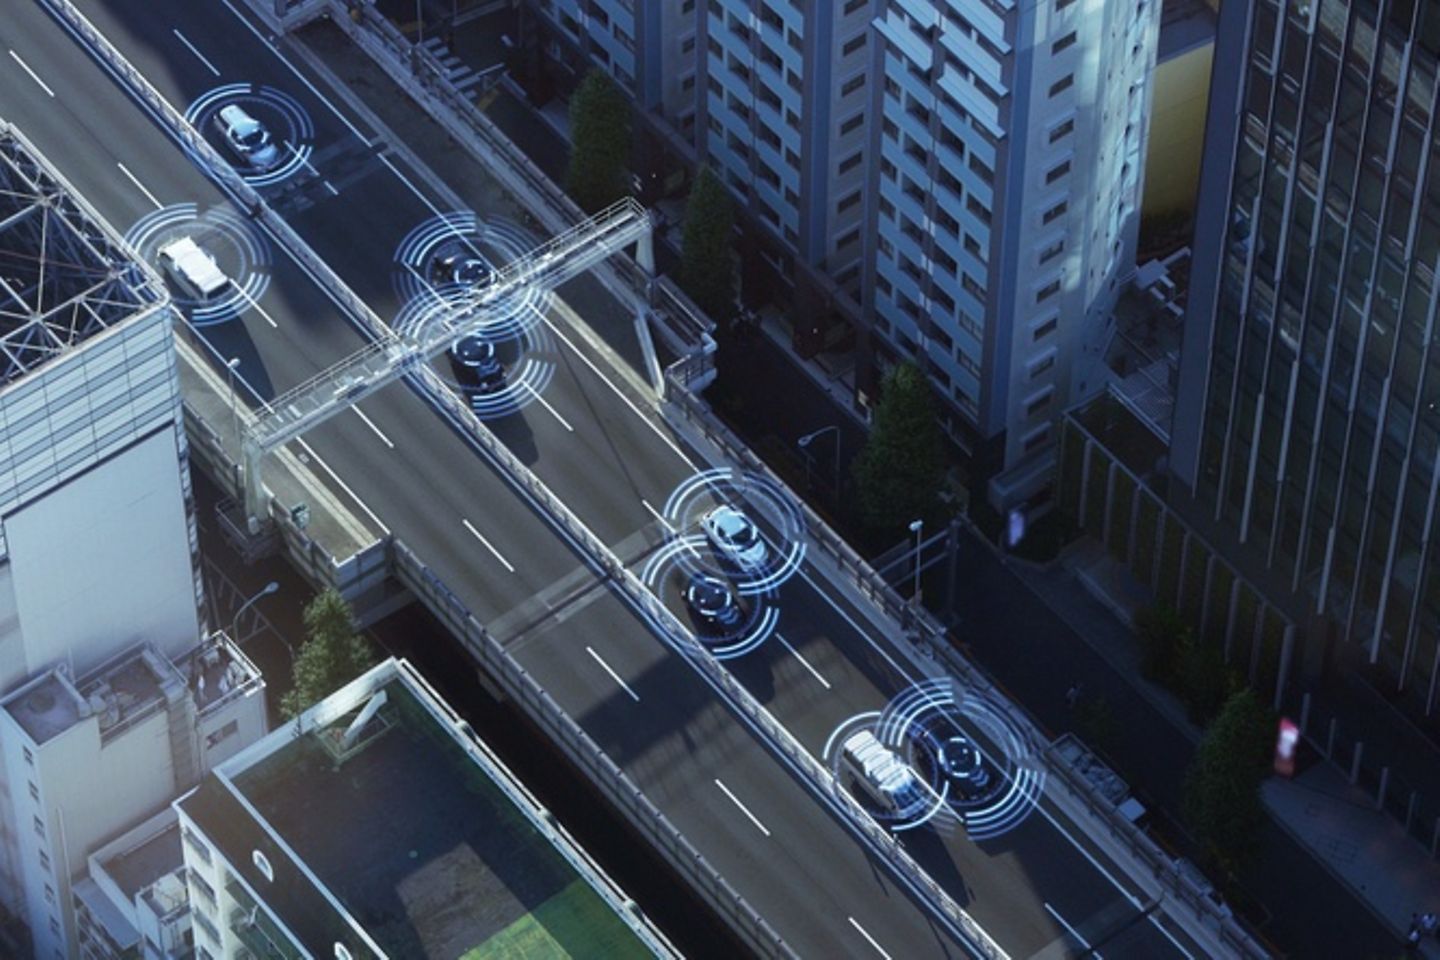 Aanzicht in vogelvlucht van een straat in een stad, waar auto's rondrijden, omgeven door netstralen.